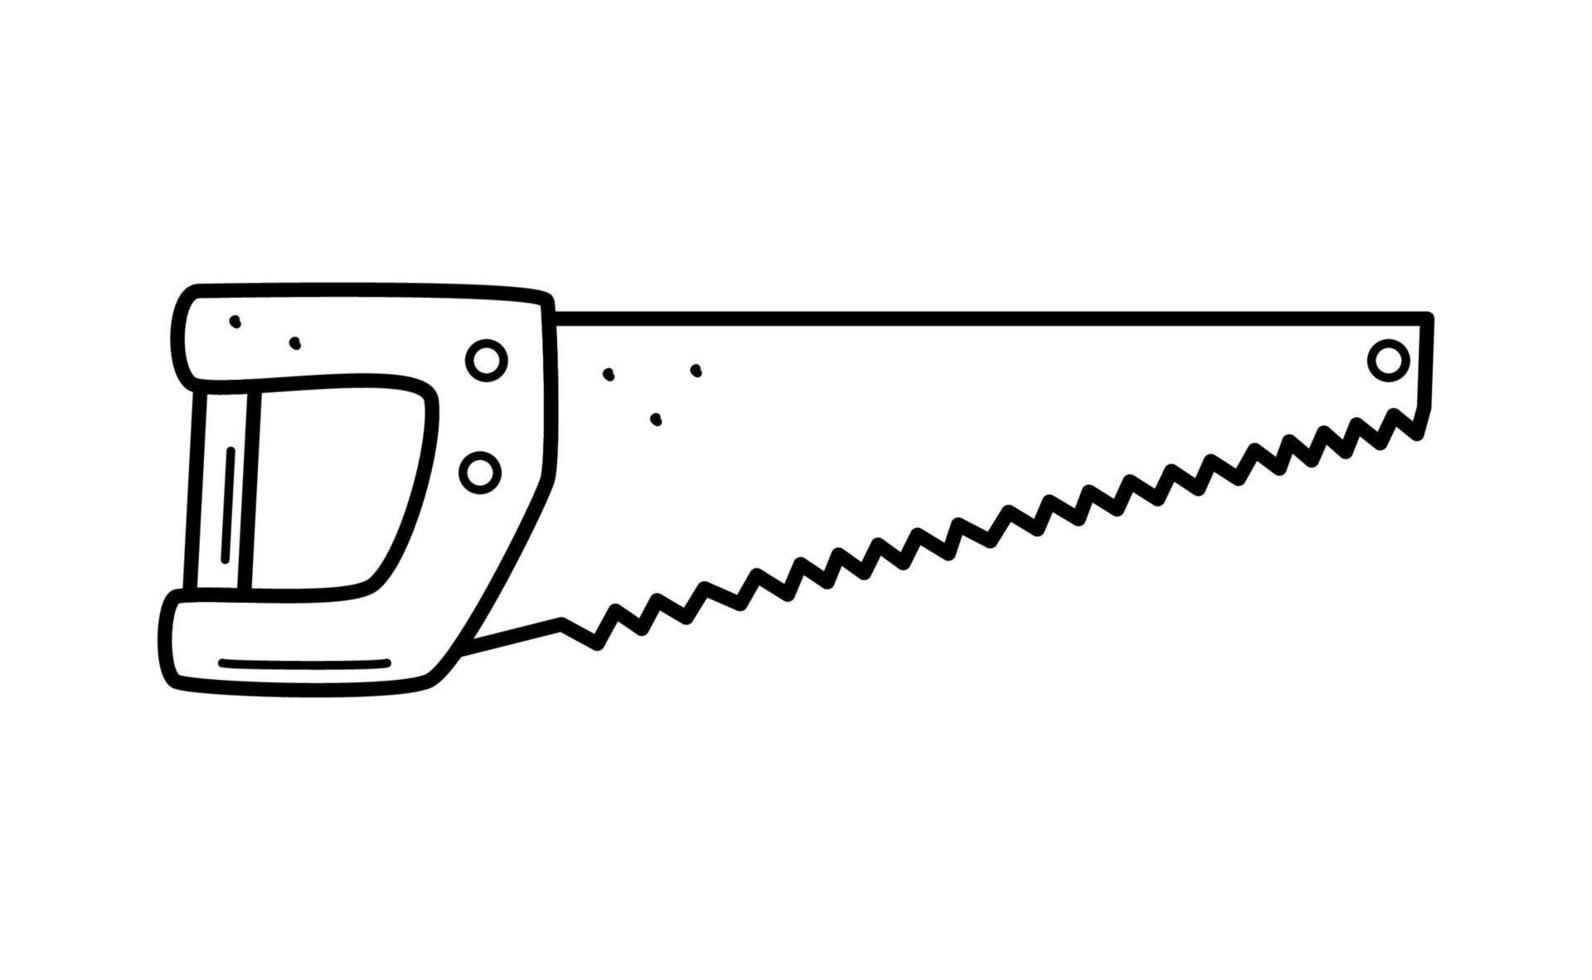 Sierra de mano doodle estilo de dibujos animados ilustración vectorial de  la herramienta de trabajo sierra para metales aislada en blanco